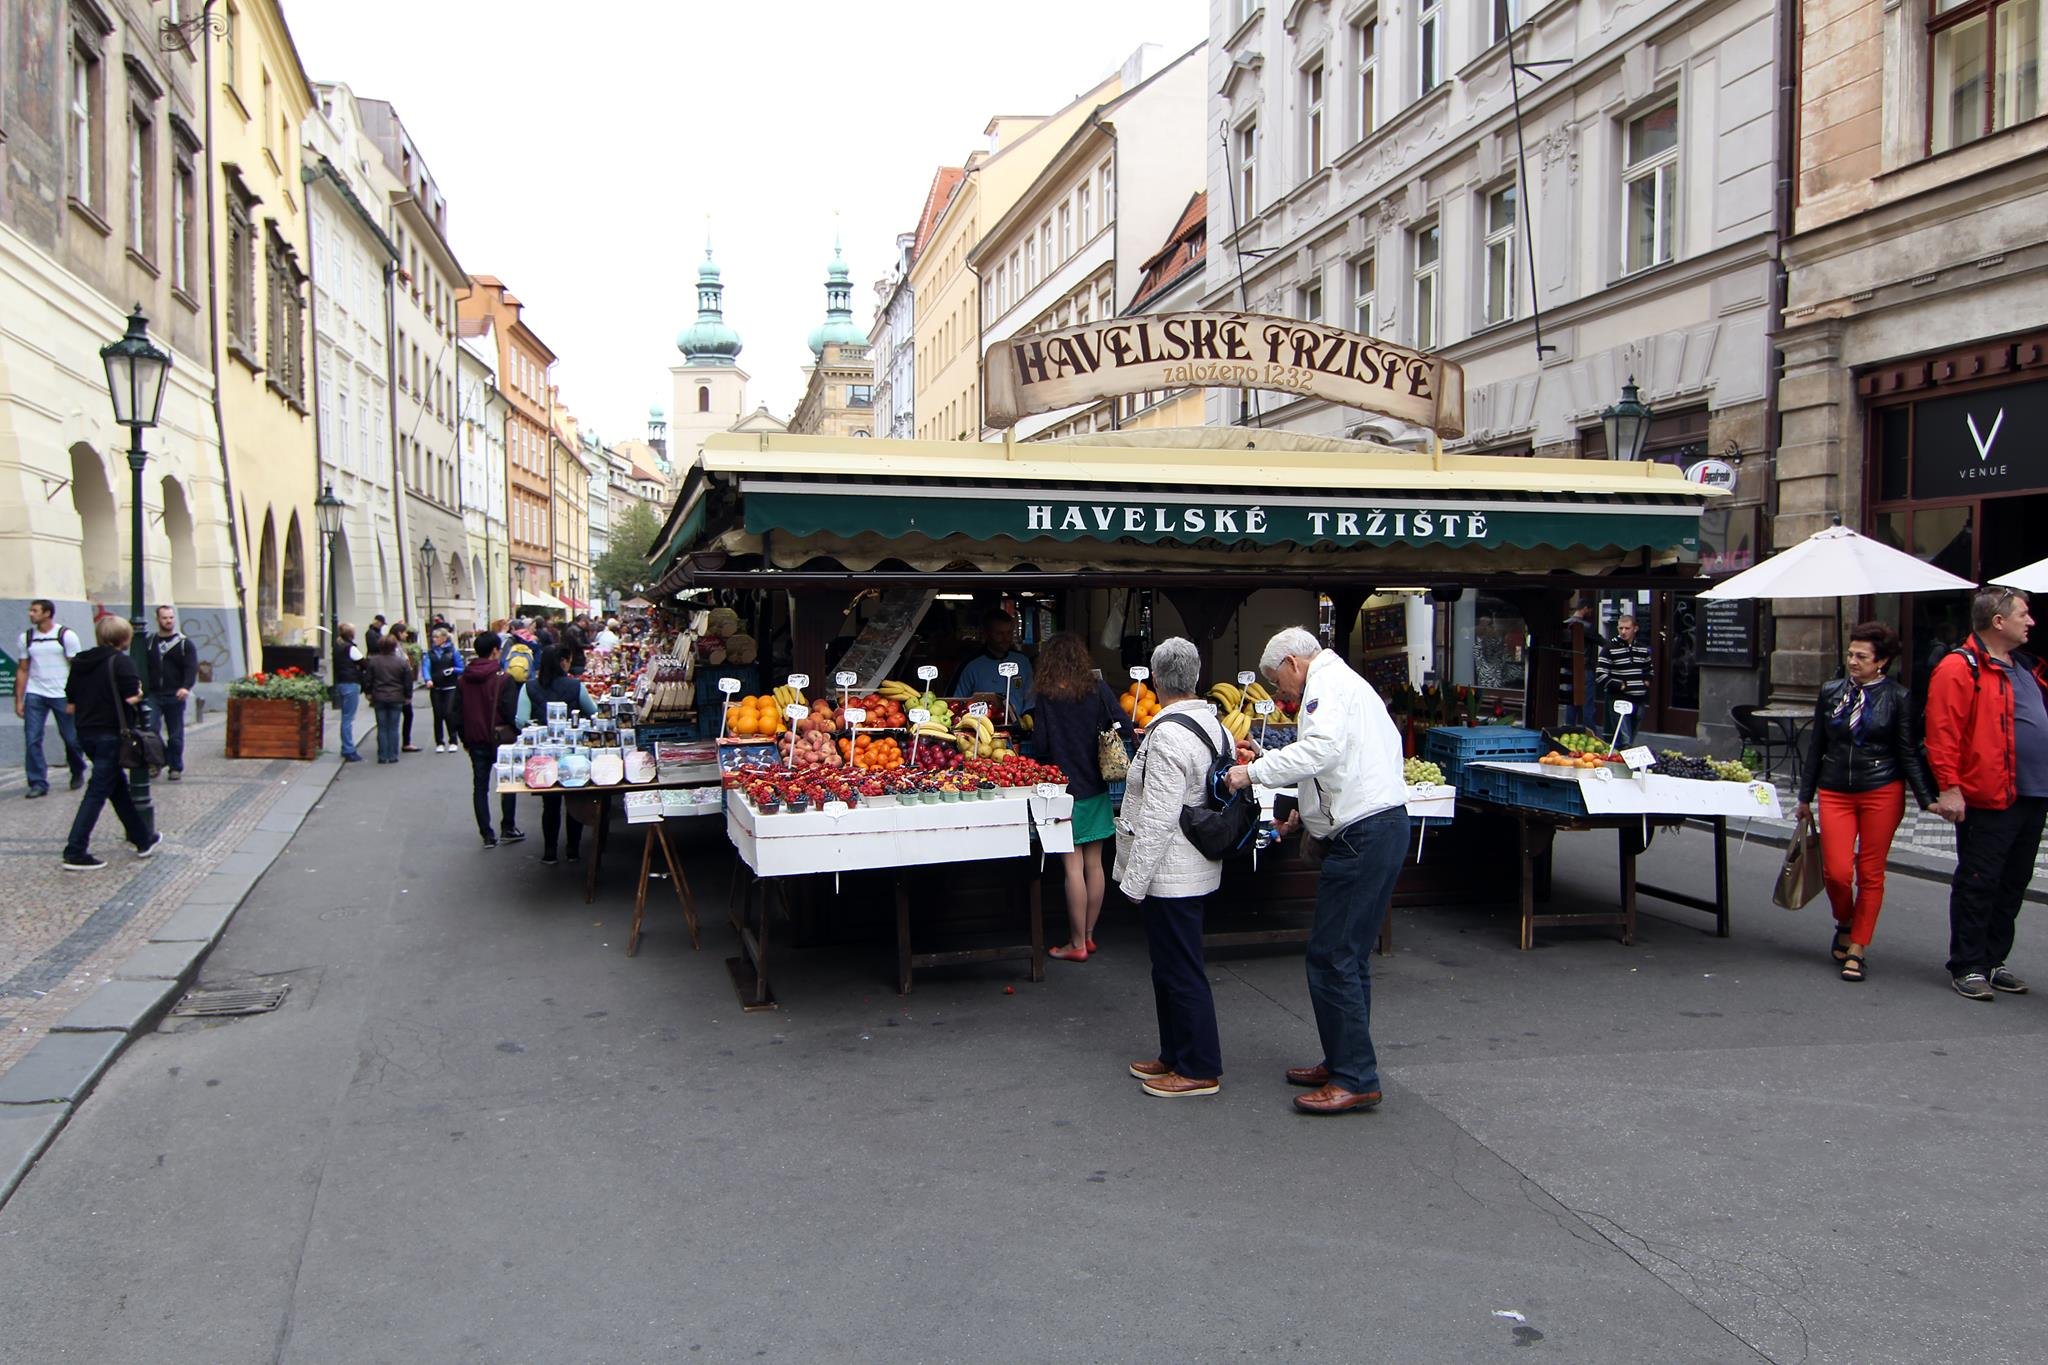 Quảng trường chợ Havel